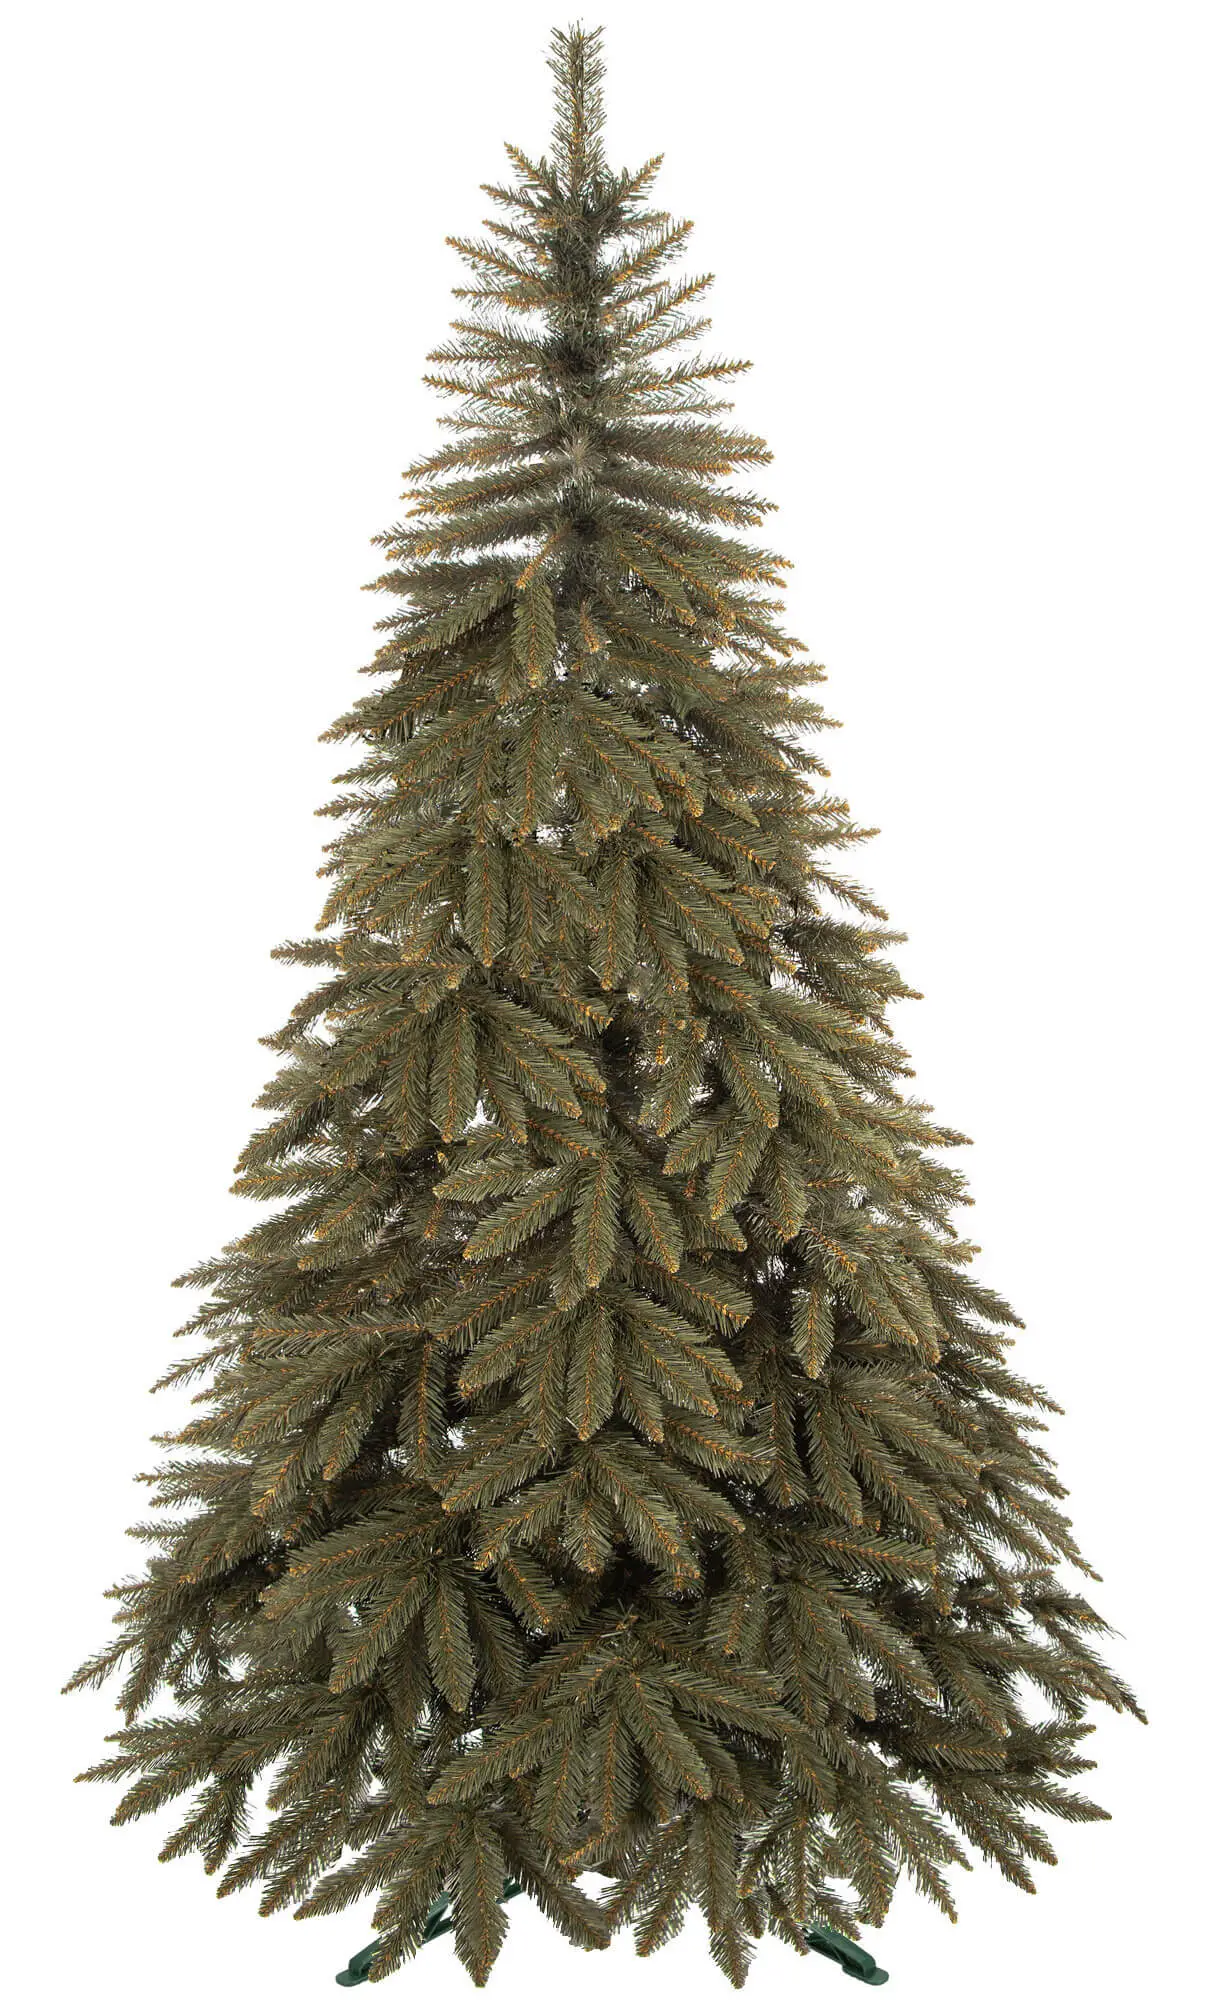 K眉nstlicher Weihnachtsbaum cm 250